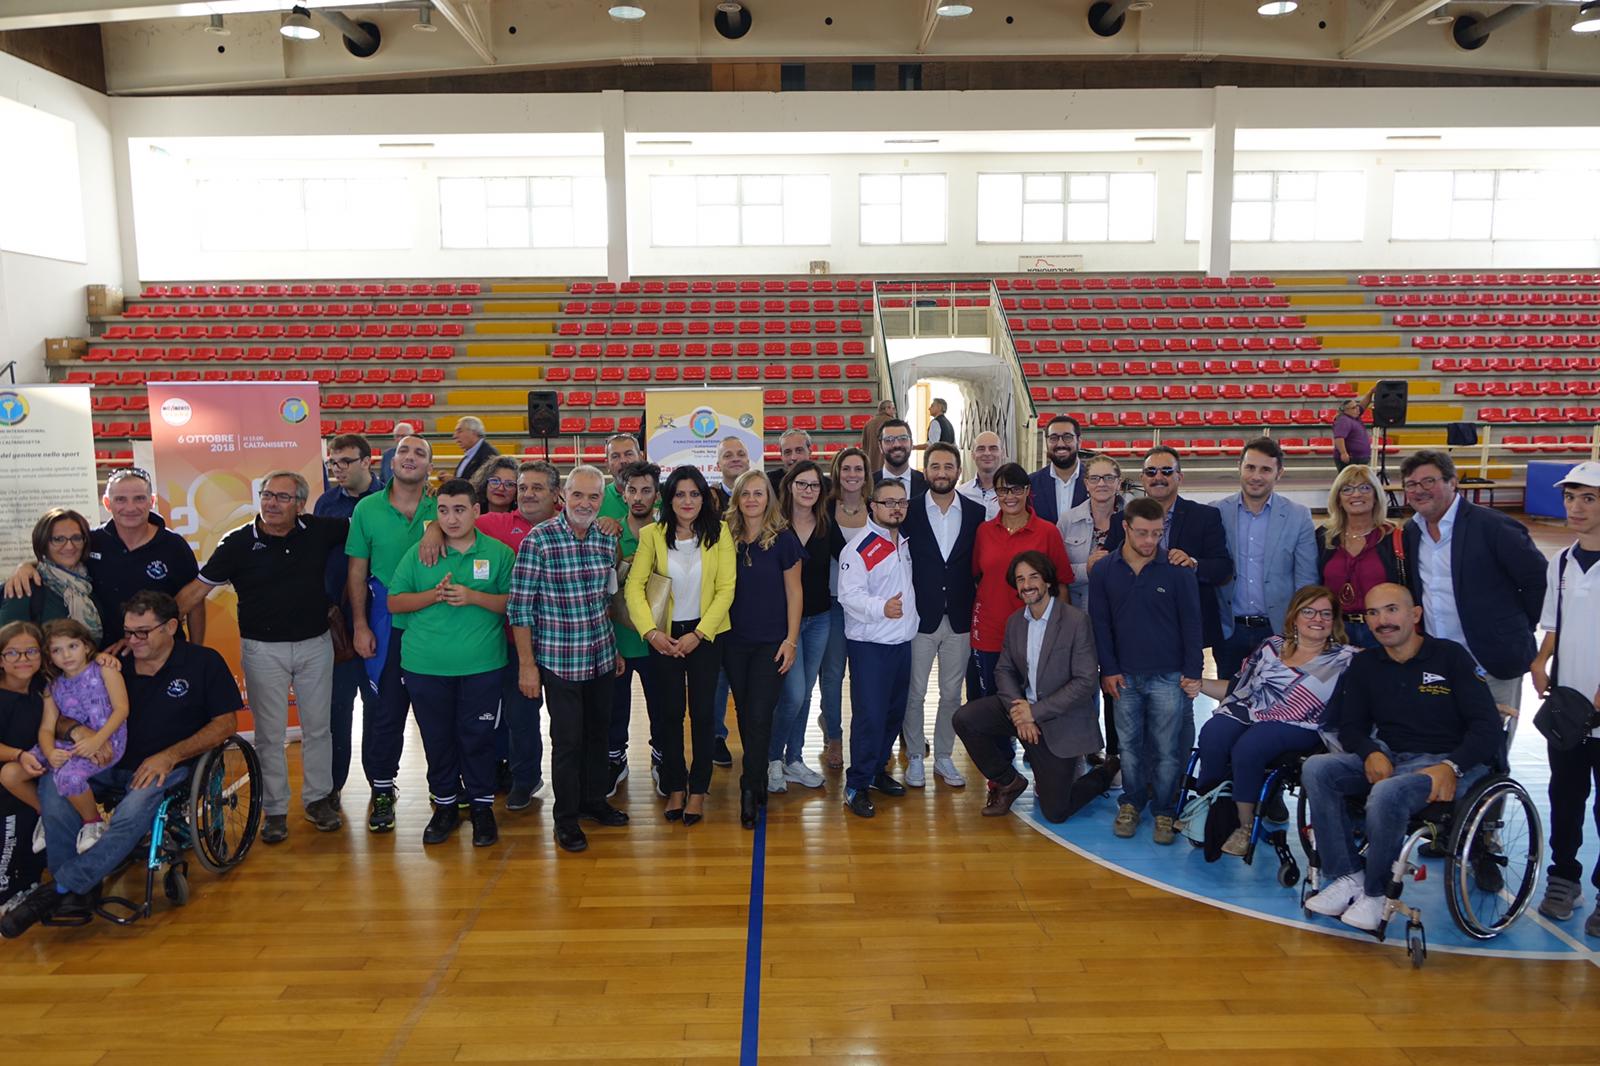 Gruppo parlamentare Ars del M5s dona 30 mila euro ad atleti disabili